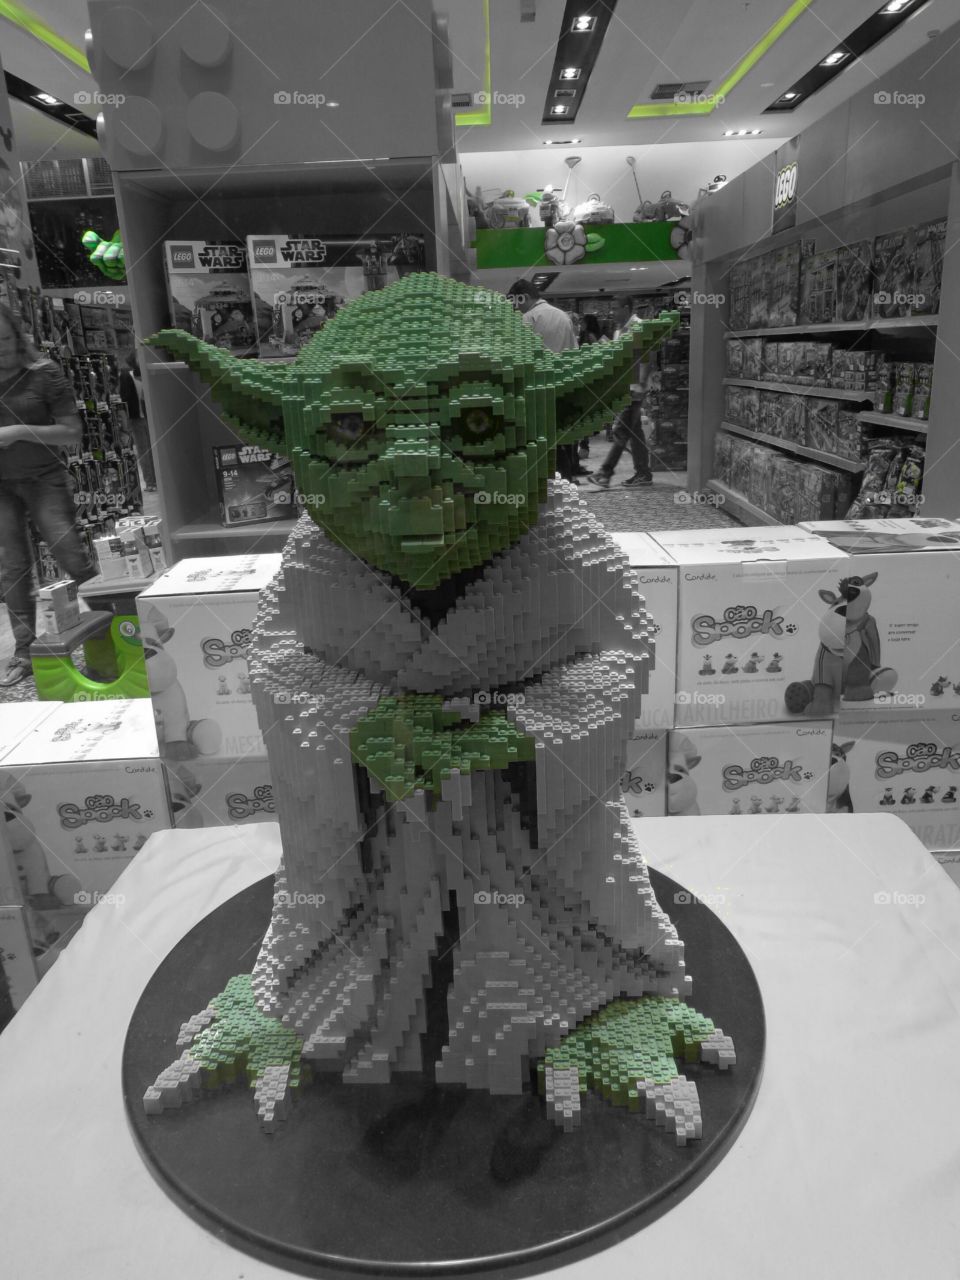 Yoda lego sculpture